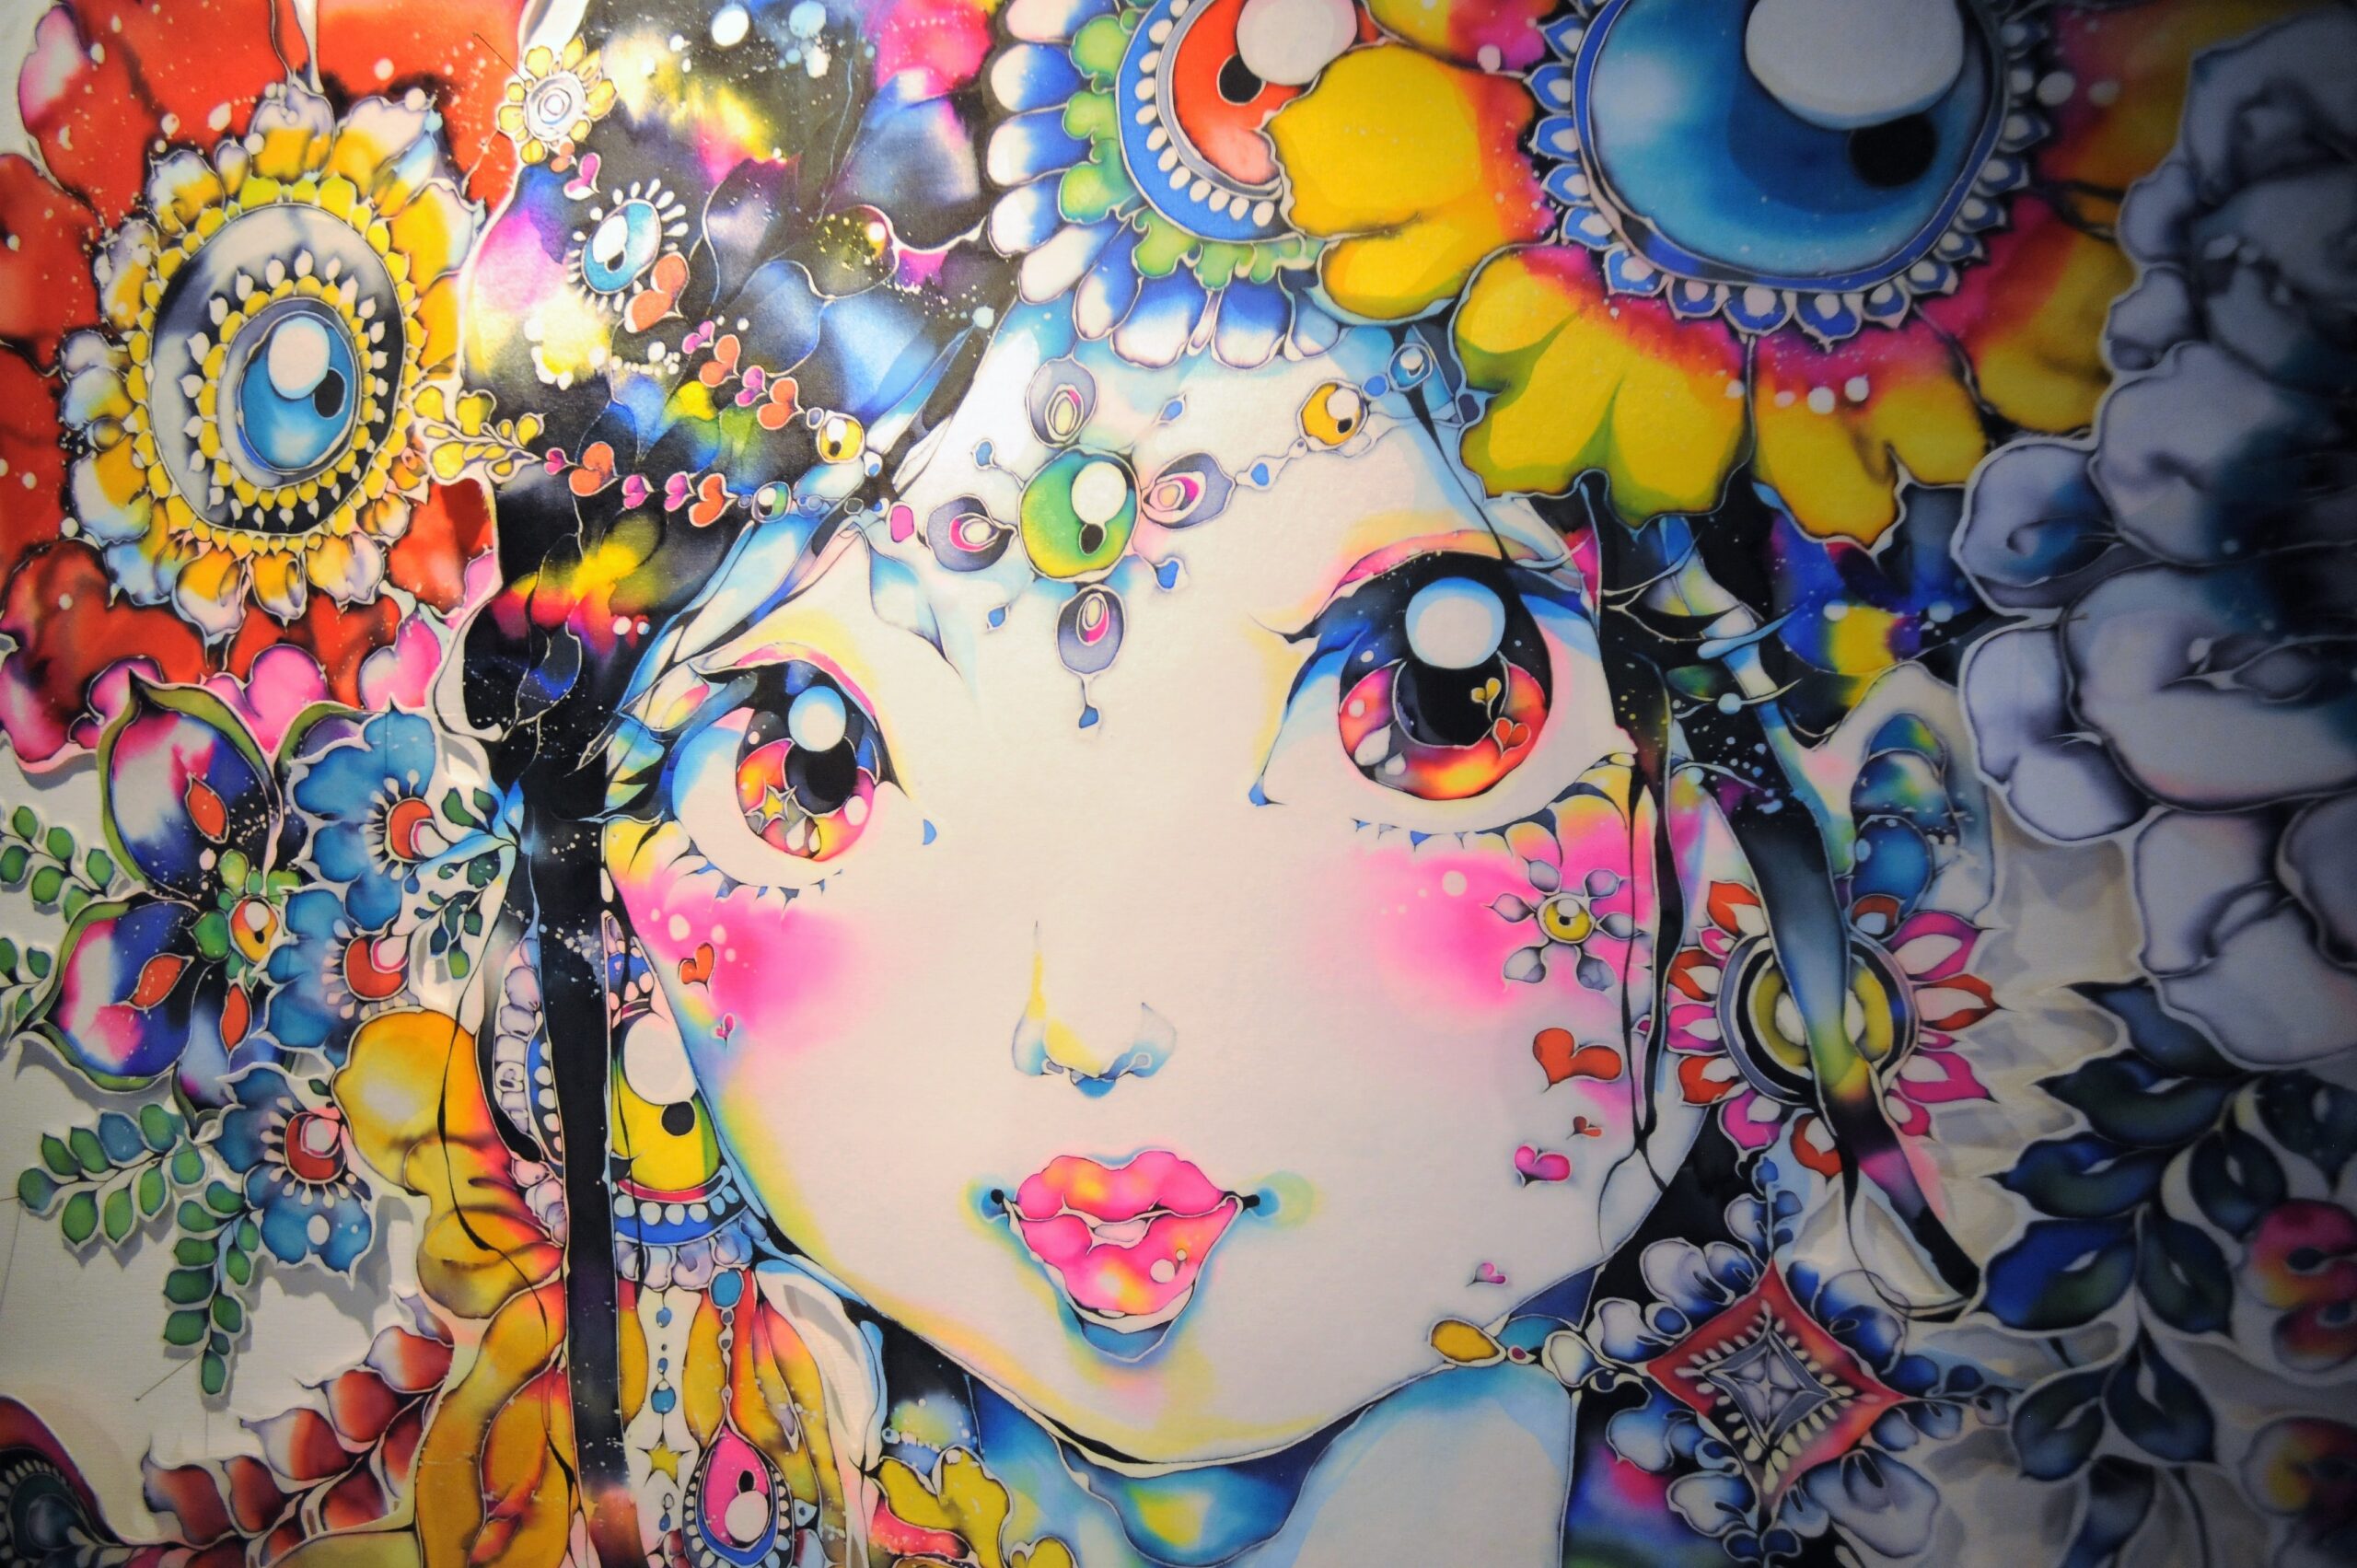 ろうけつ染めアーティスト大竹夏妃さんの作品。 花飾りを身に付けた少女が鮮やかな染料で描かれている。